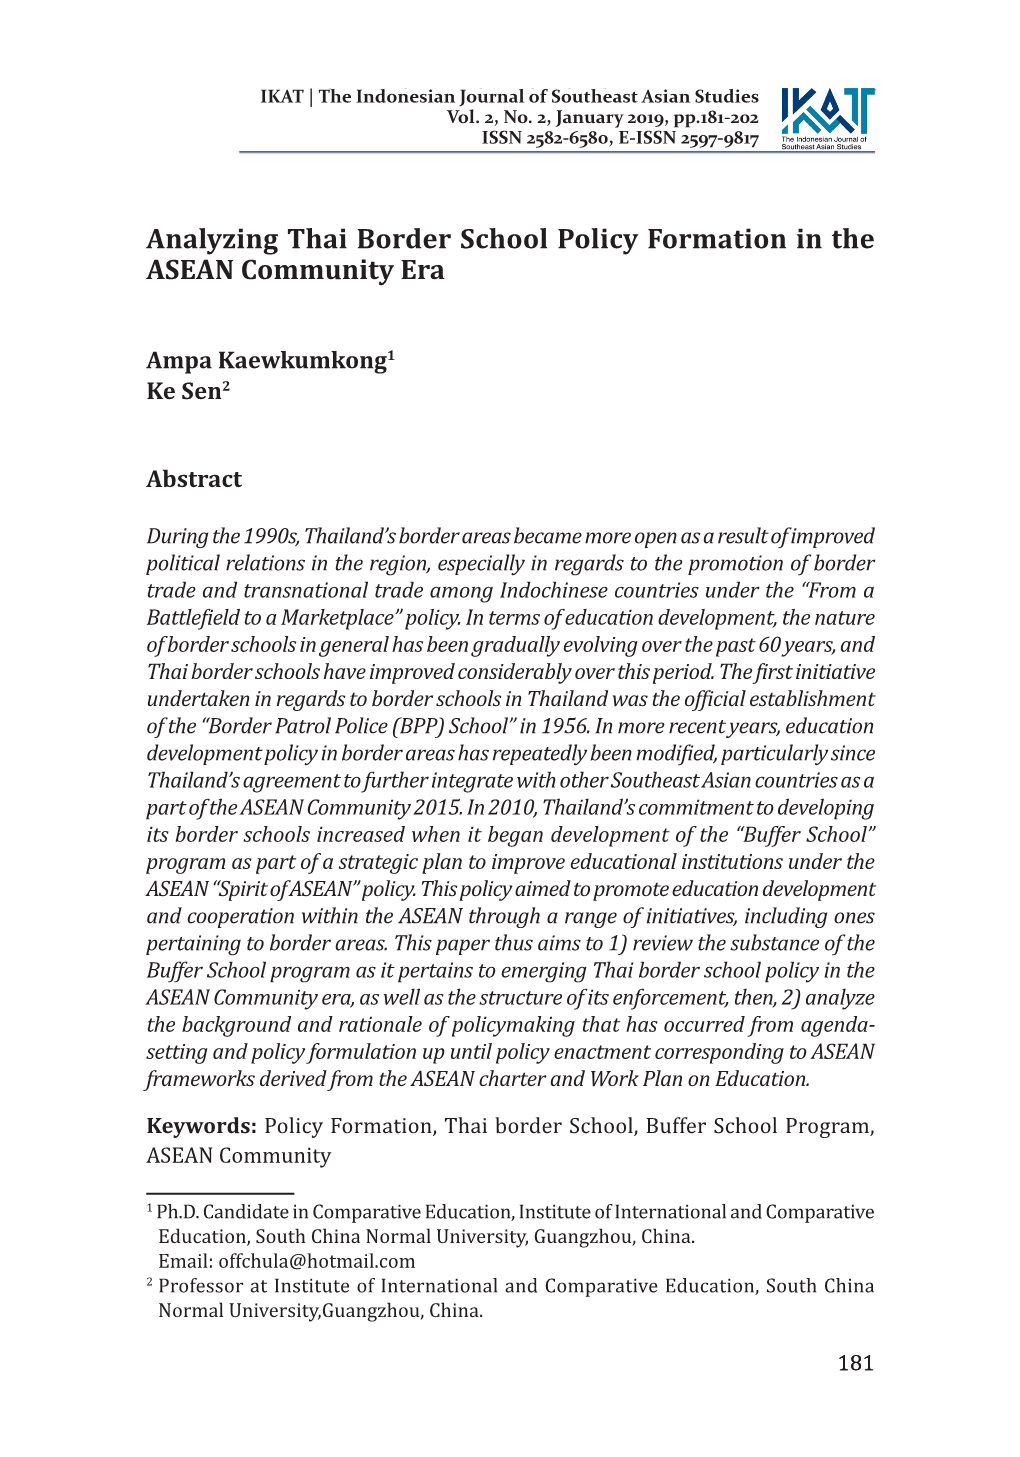 Analyzing Thai Border School Policy Formation in the ASEAN Community Era